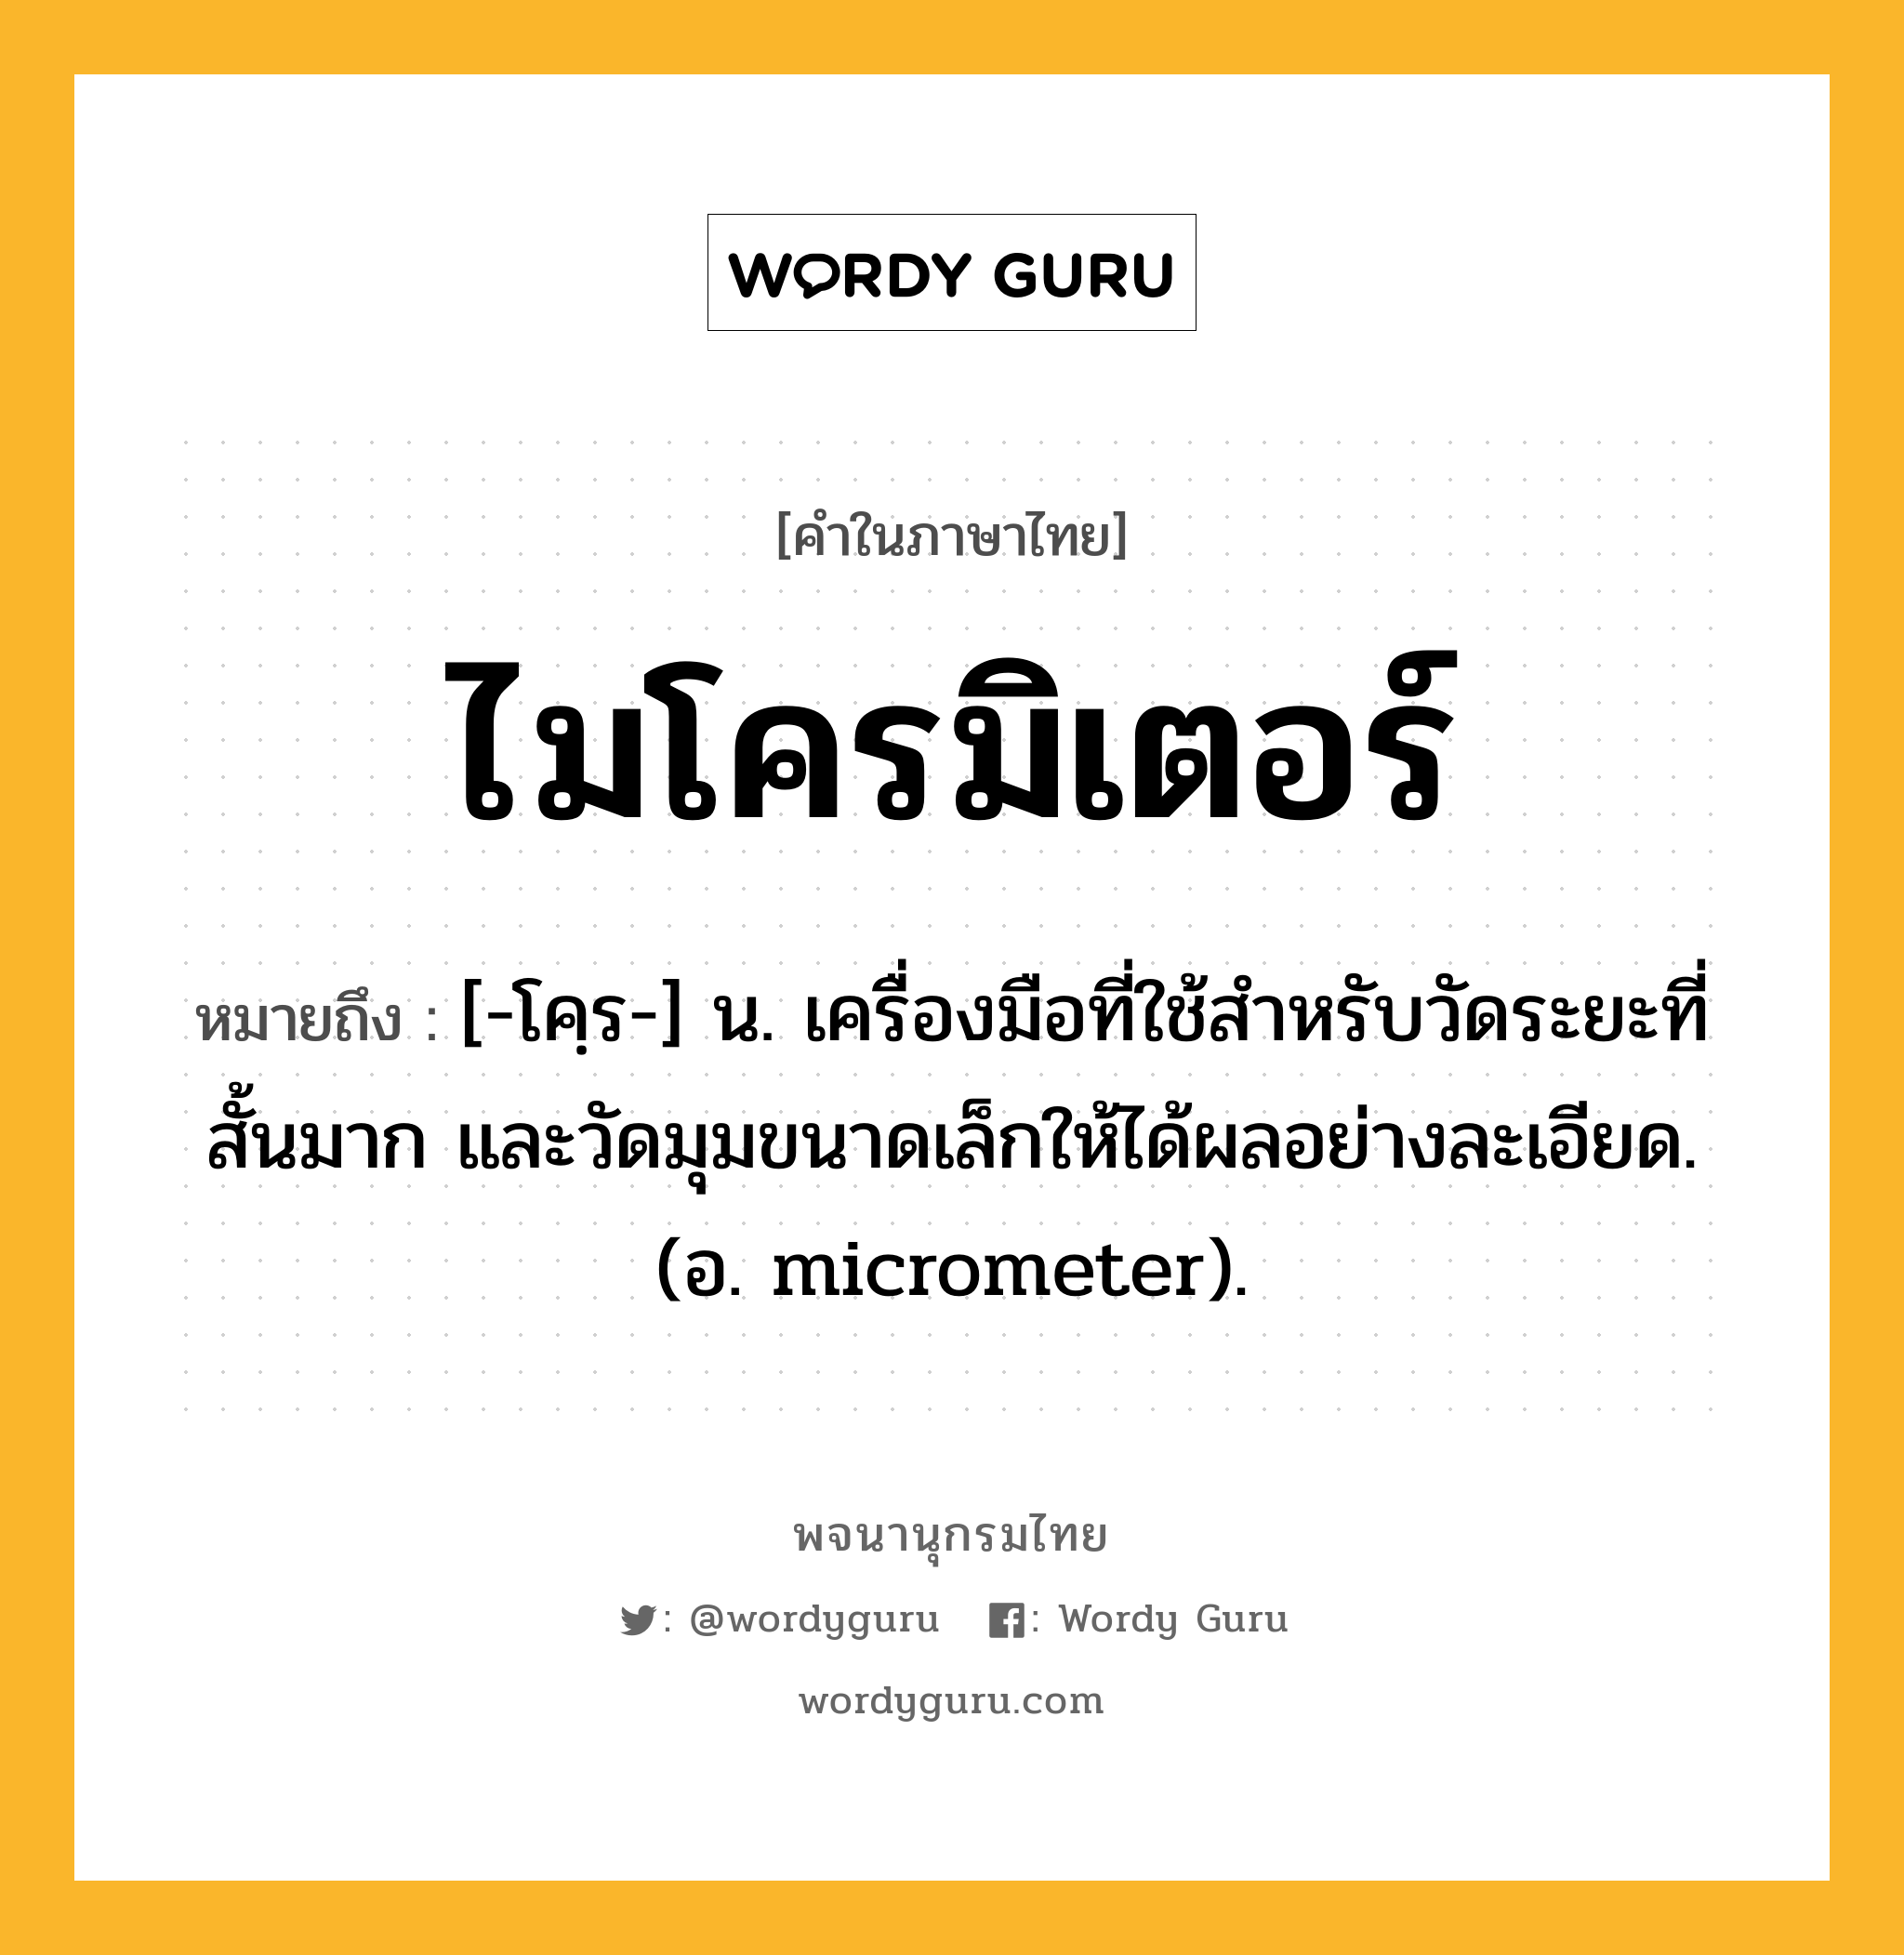 ไมโครมิเตอร์ ความหมาย หมายถึงอะไร?, คำในภาษาไทย ไมโครมิเตอร์ หมายถึง [-โคฺร-] น. เครื่องมือที่ใช้สําหรับวัดระยะที่สั้นมาก และวัดมุมขนาดเล็กให้ได้ผลอย่างละเอียด. (อ. micrometer).